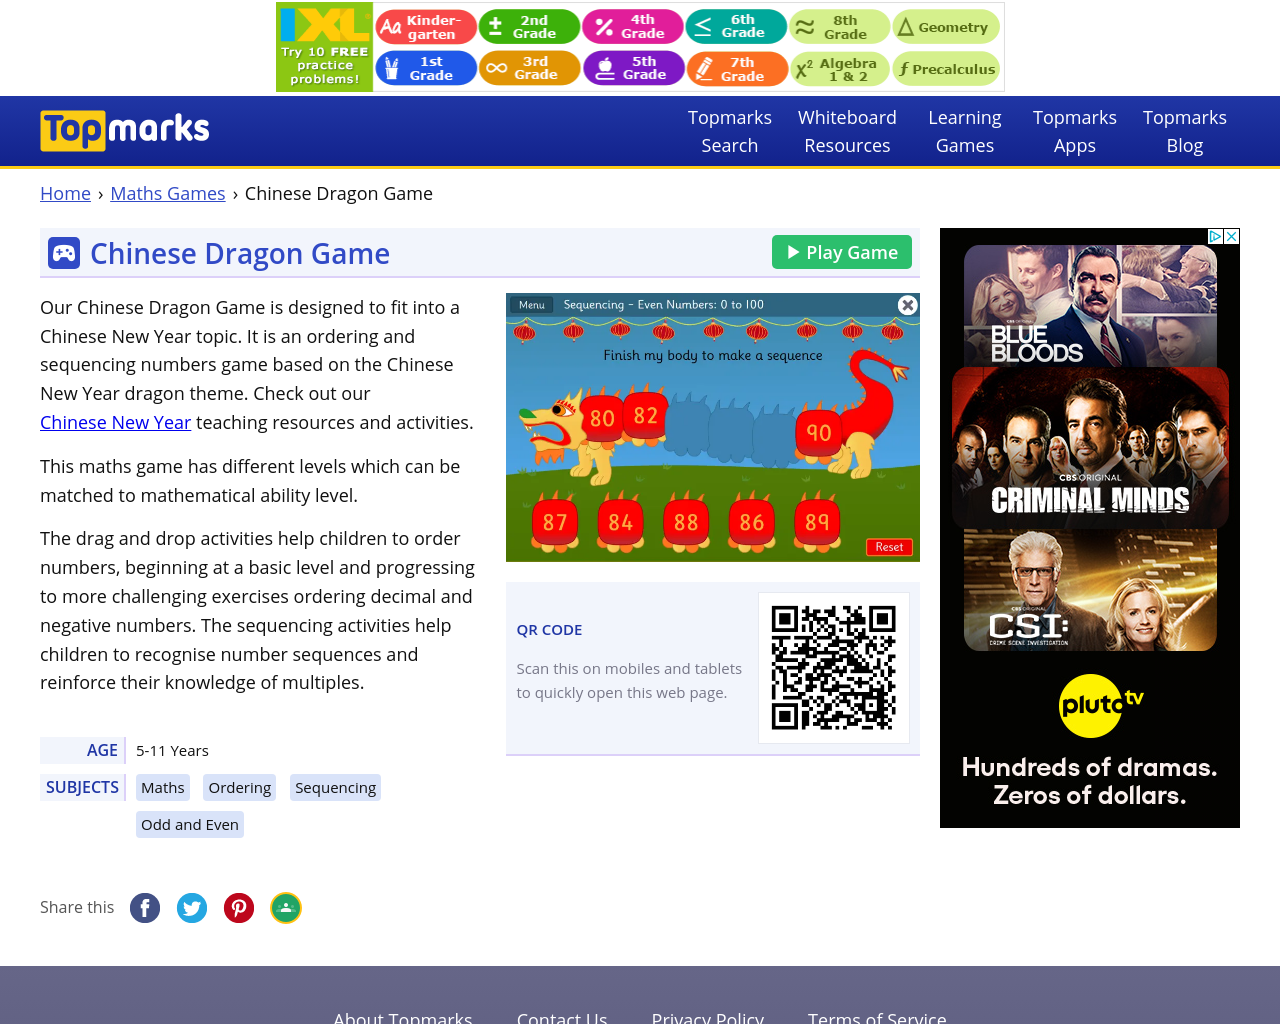 Chinese Dragon game